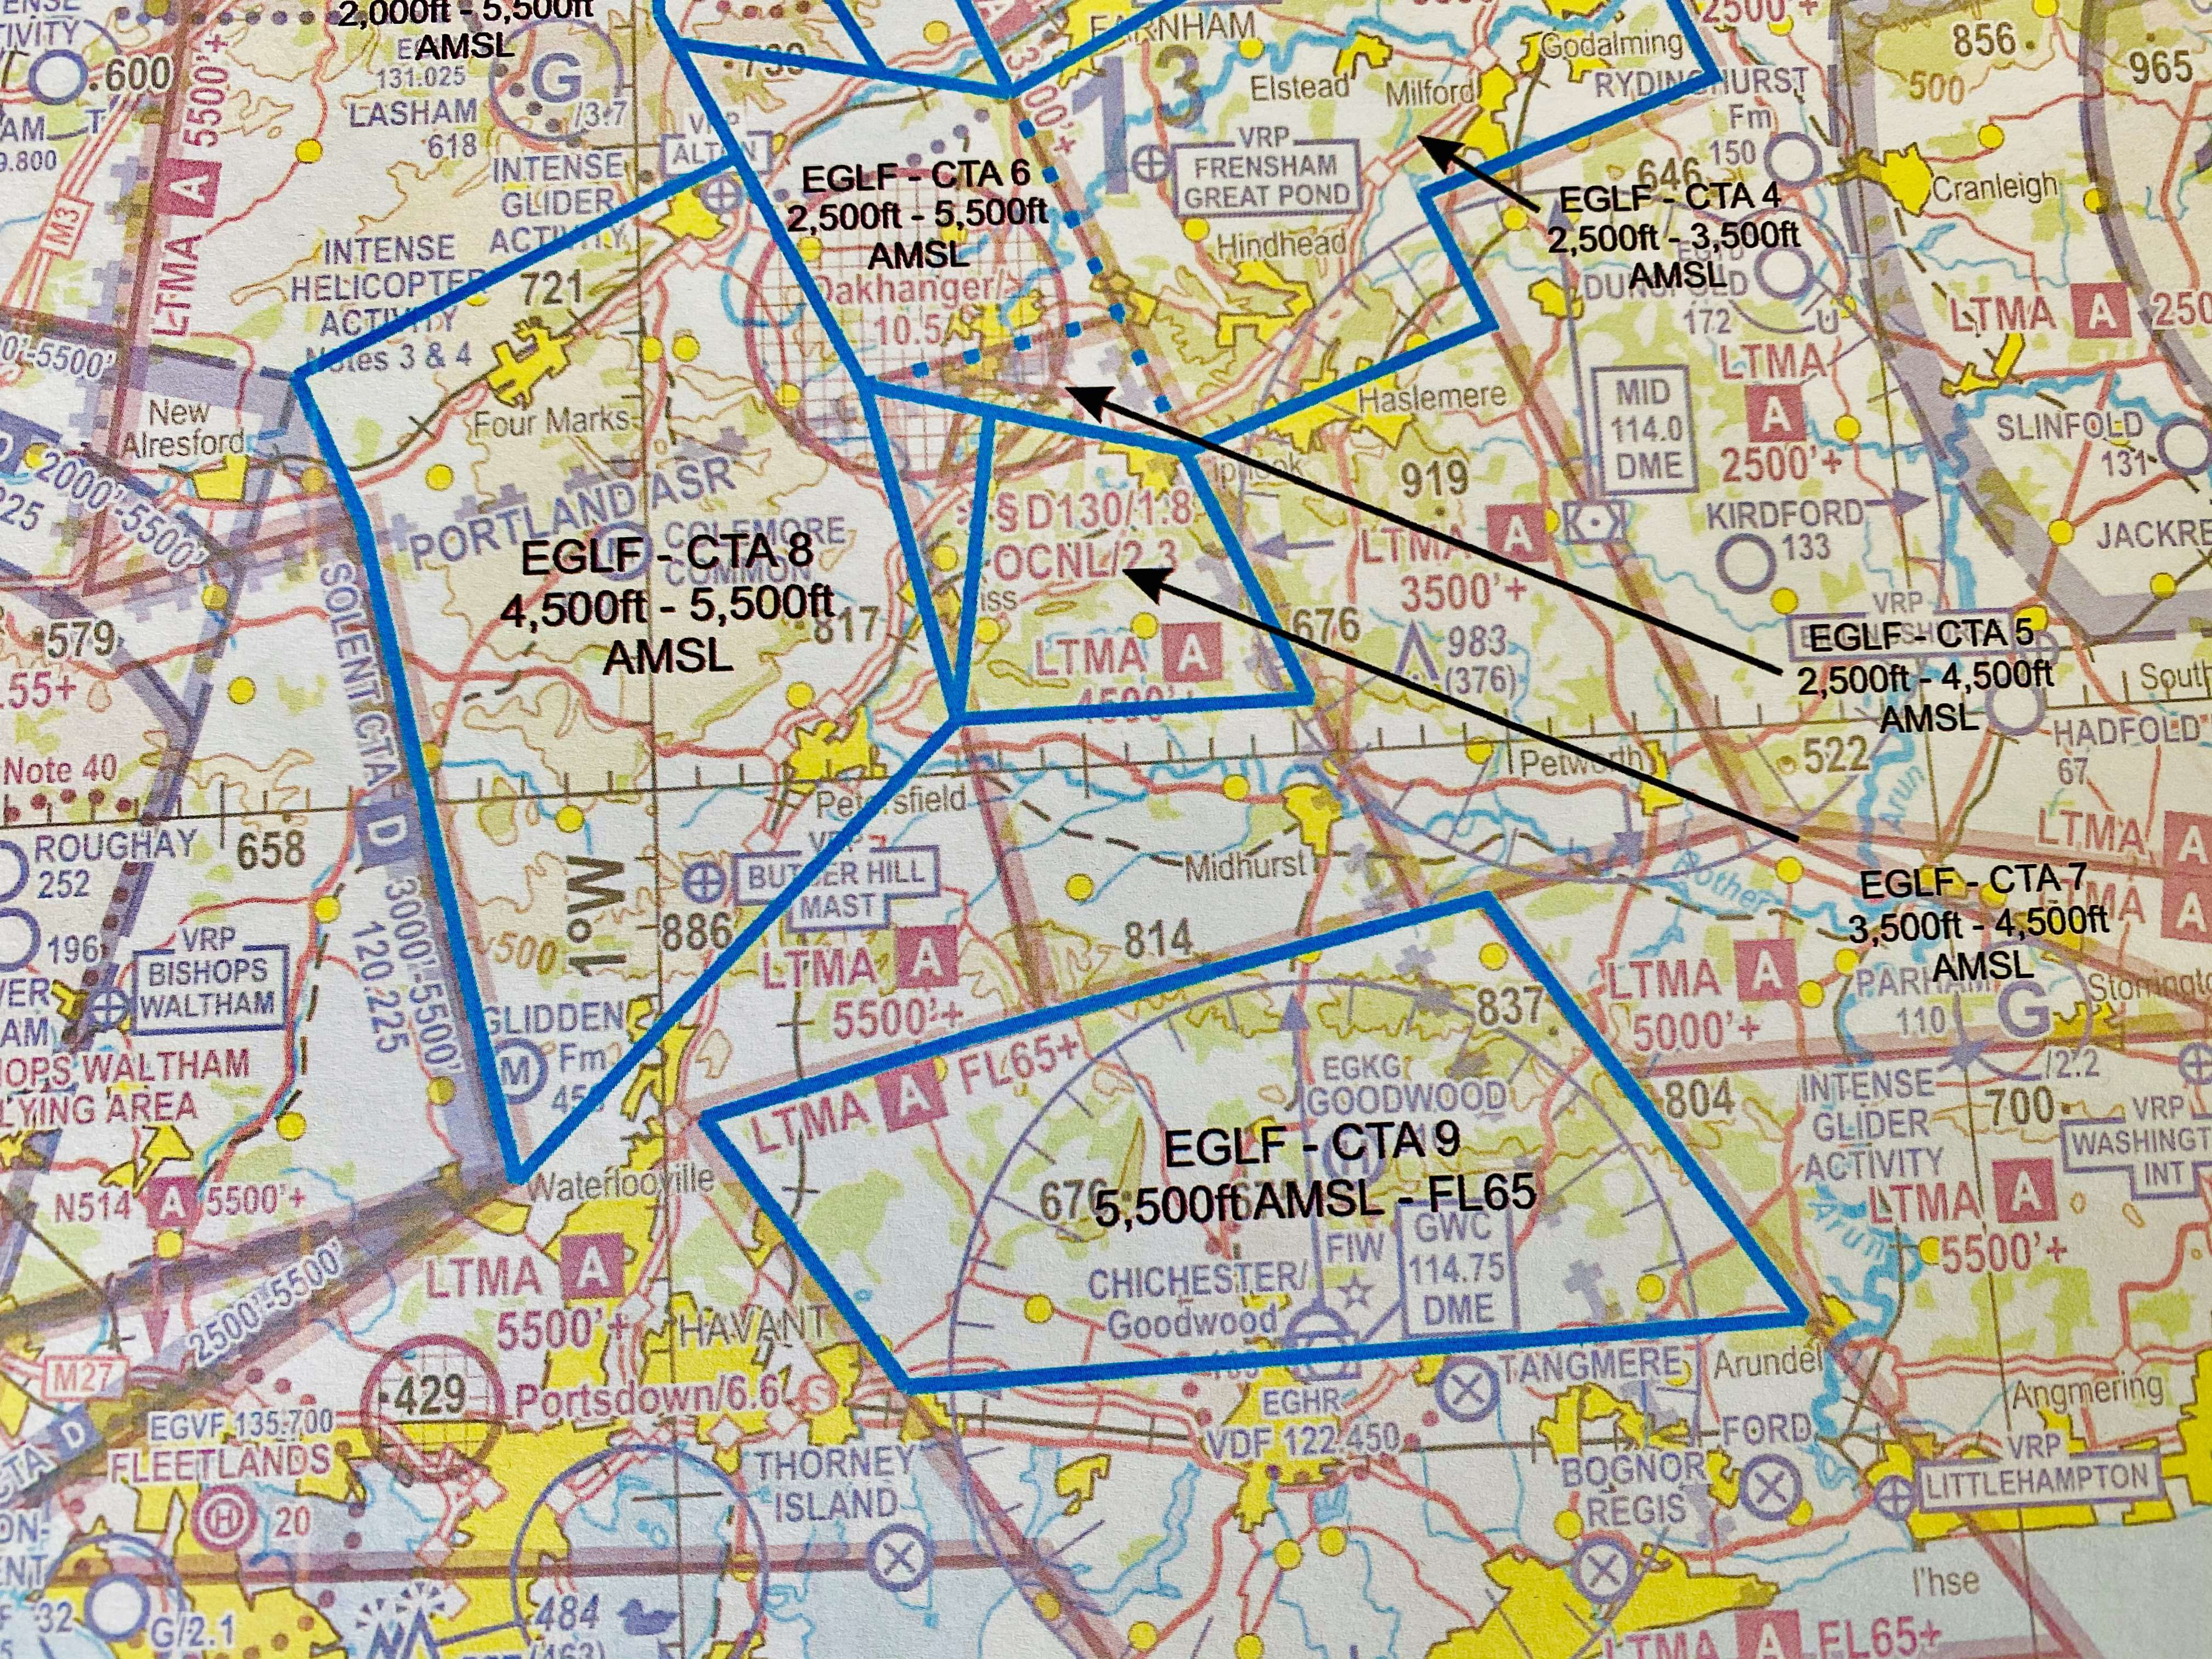 farnborough-as-map.jpg